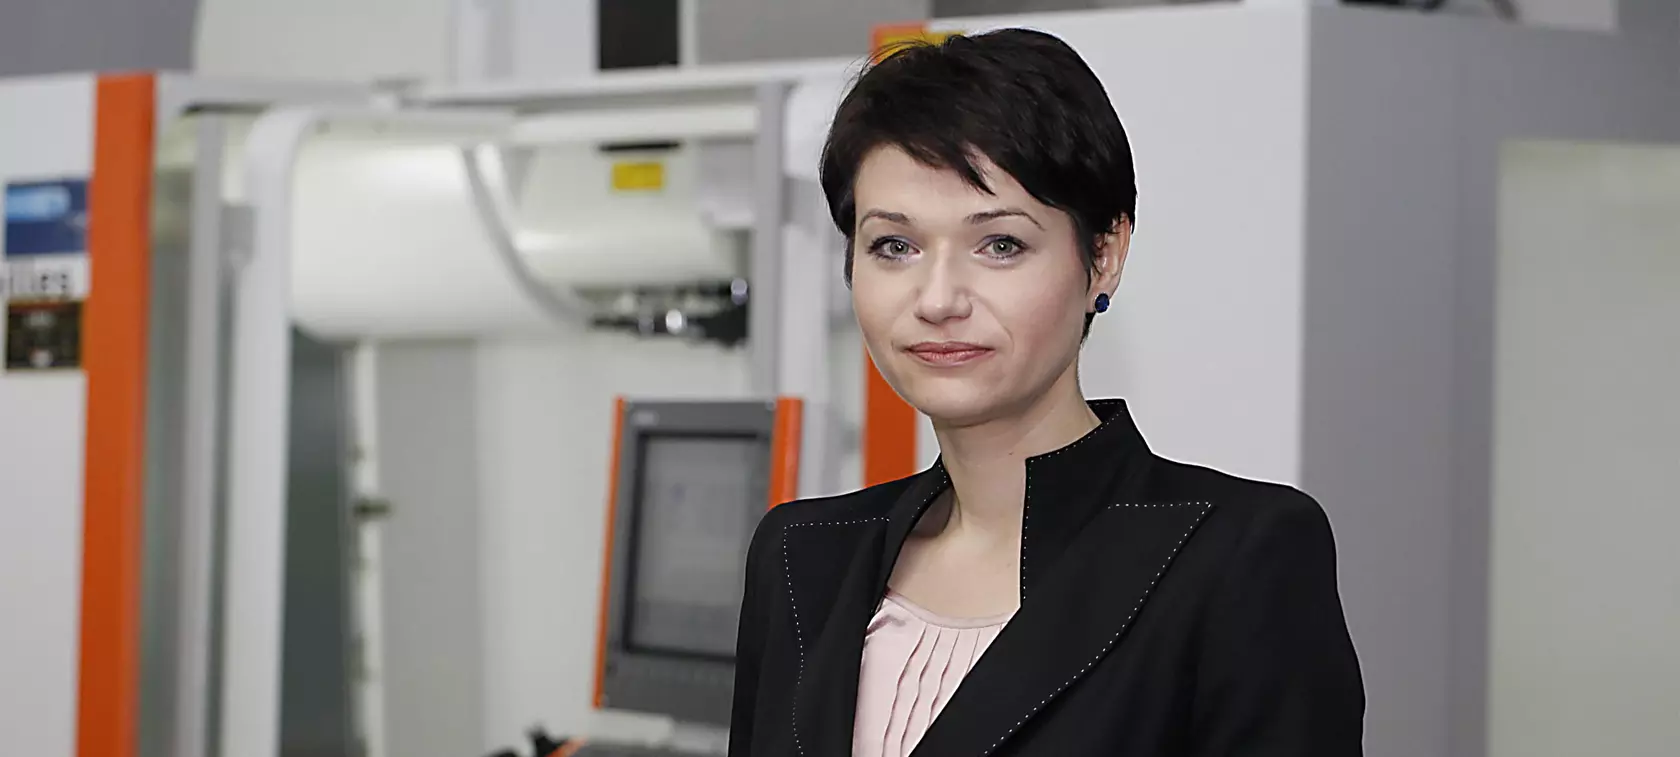 Katarzyna Rutkowska (Prezes AC S.A.) - strategia nowych wyzwań